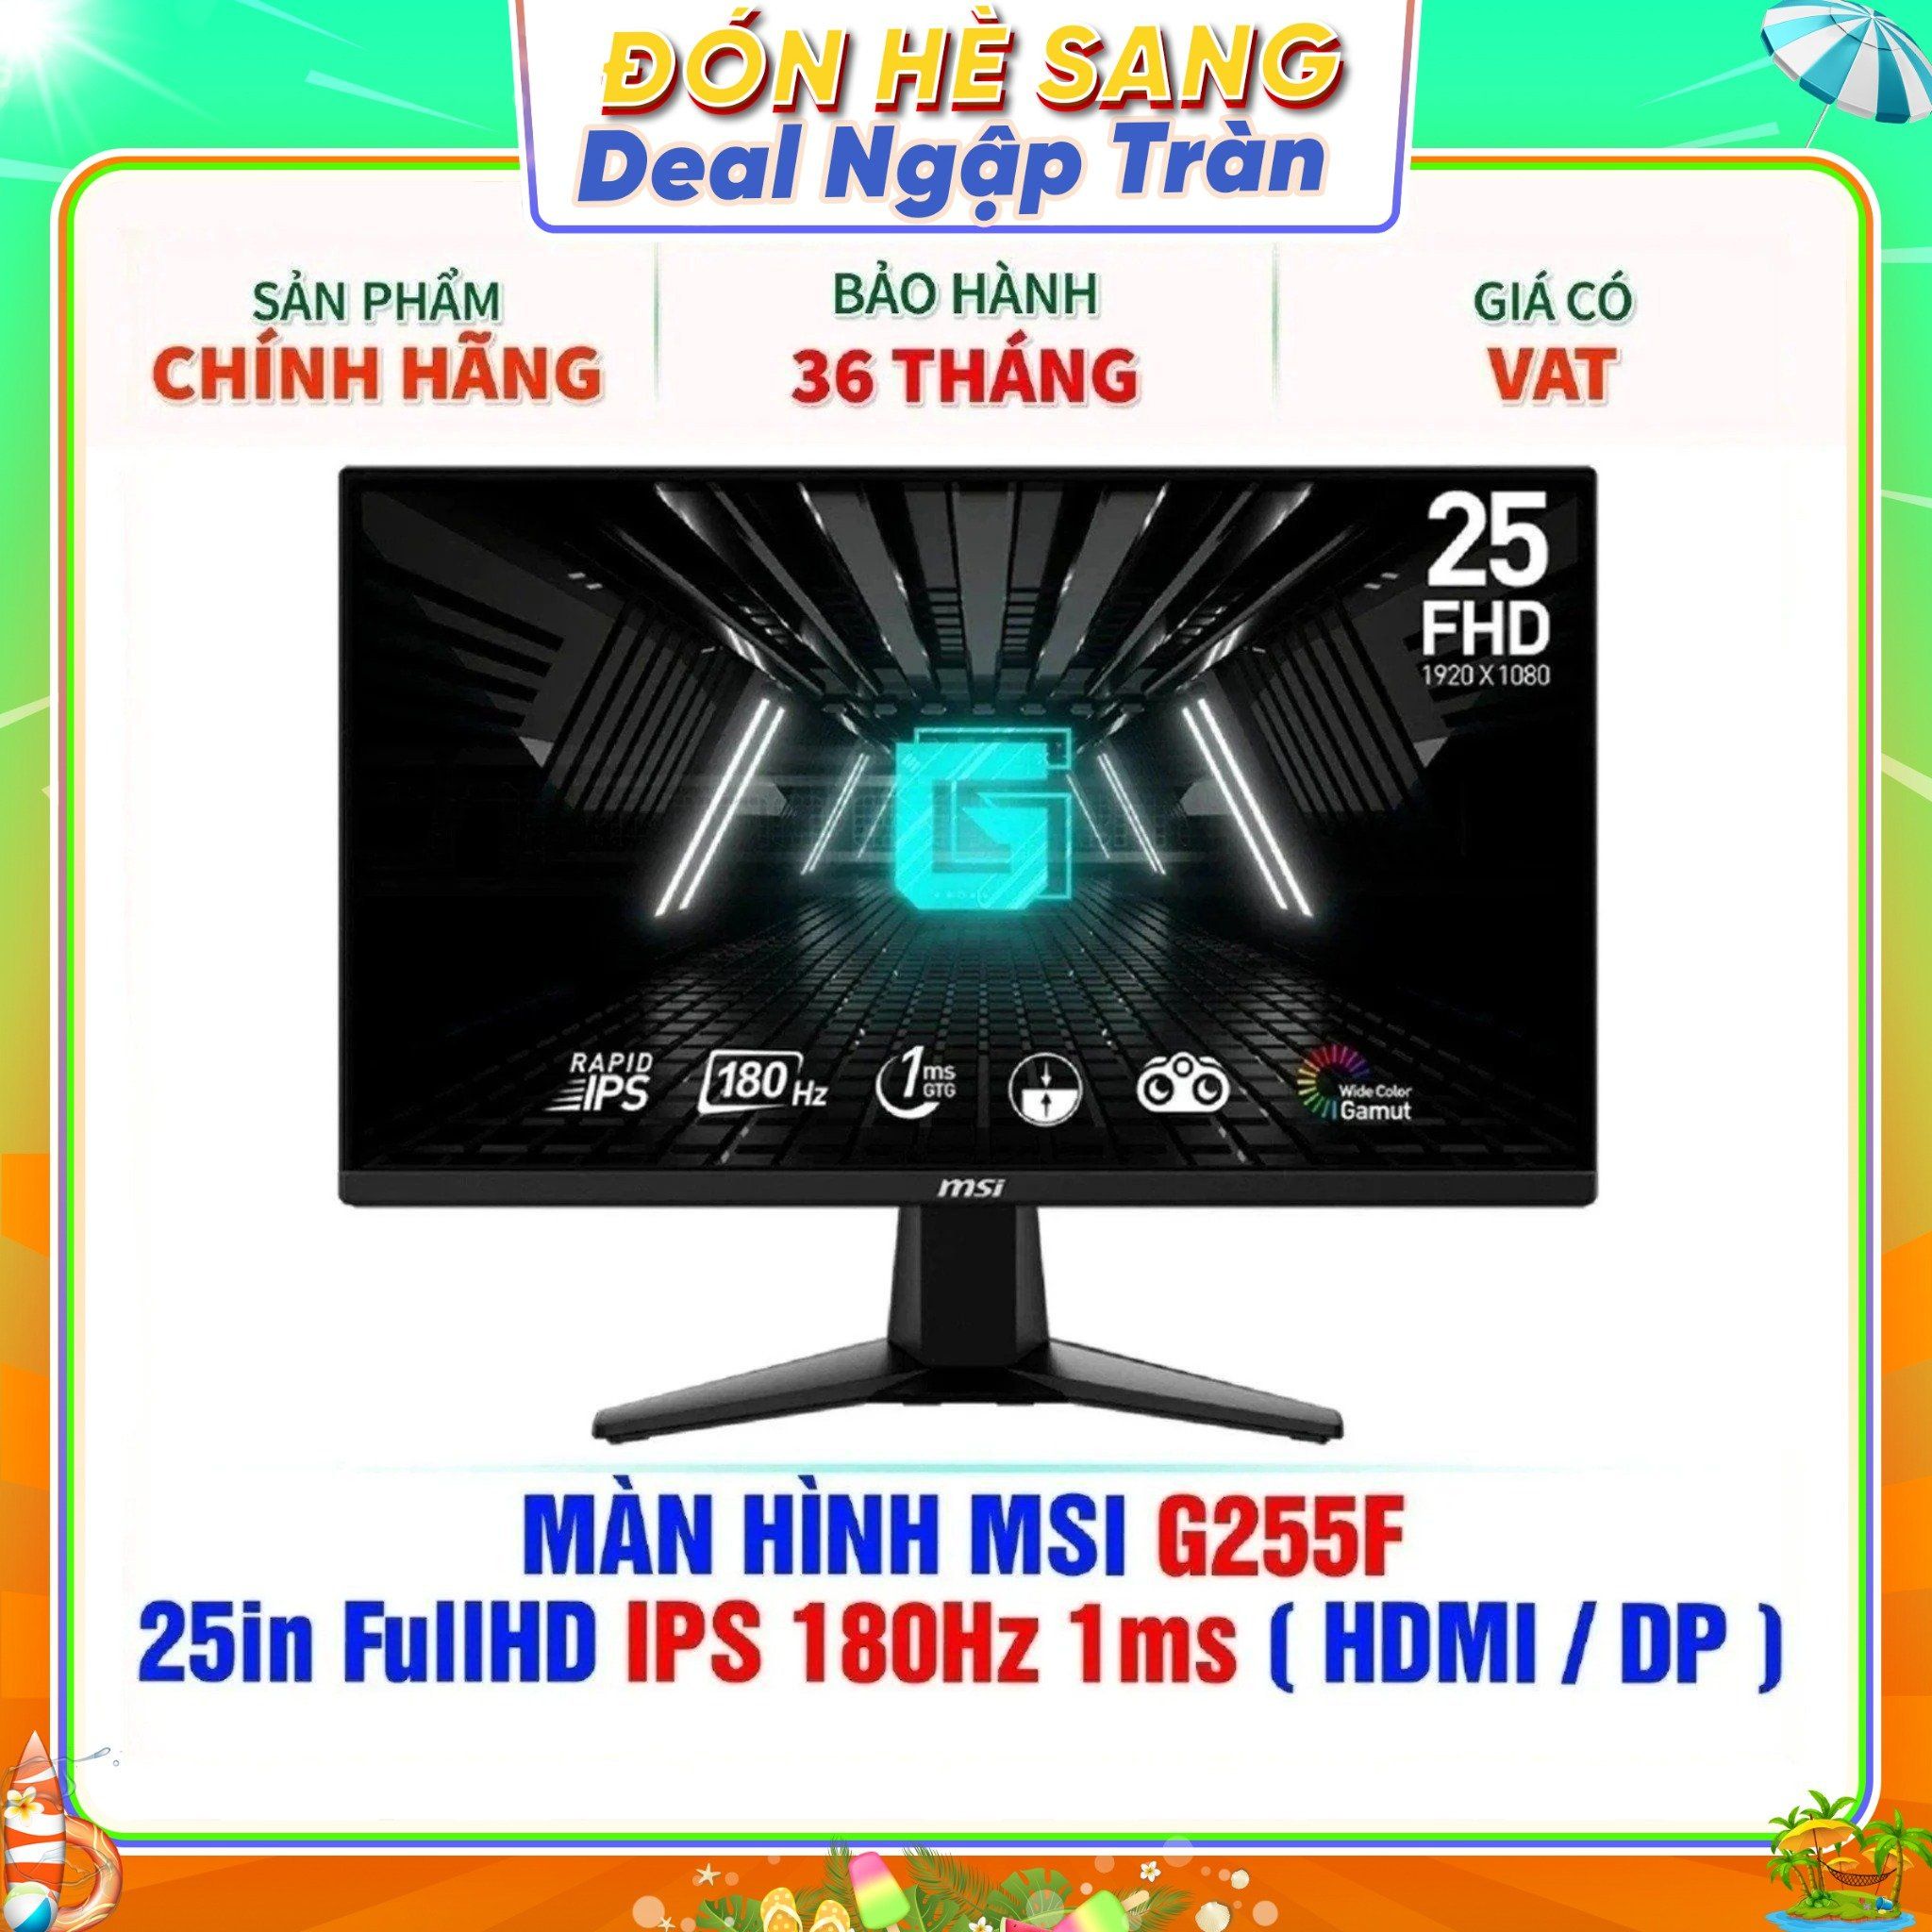  MÀN HÌNH MSI G255F 25in FullHD IPS 180Hz 1ms ( HDMI / DP ) 